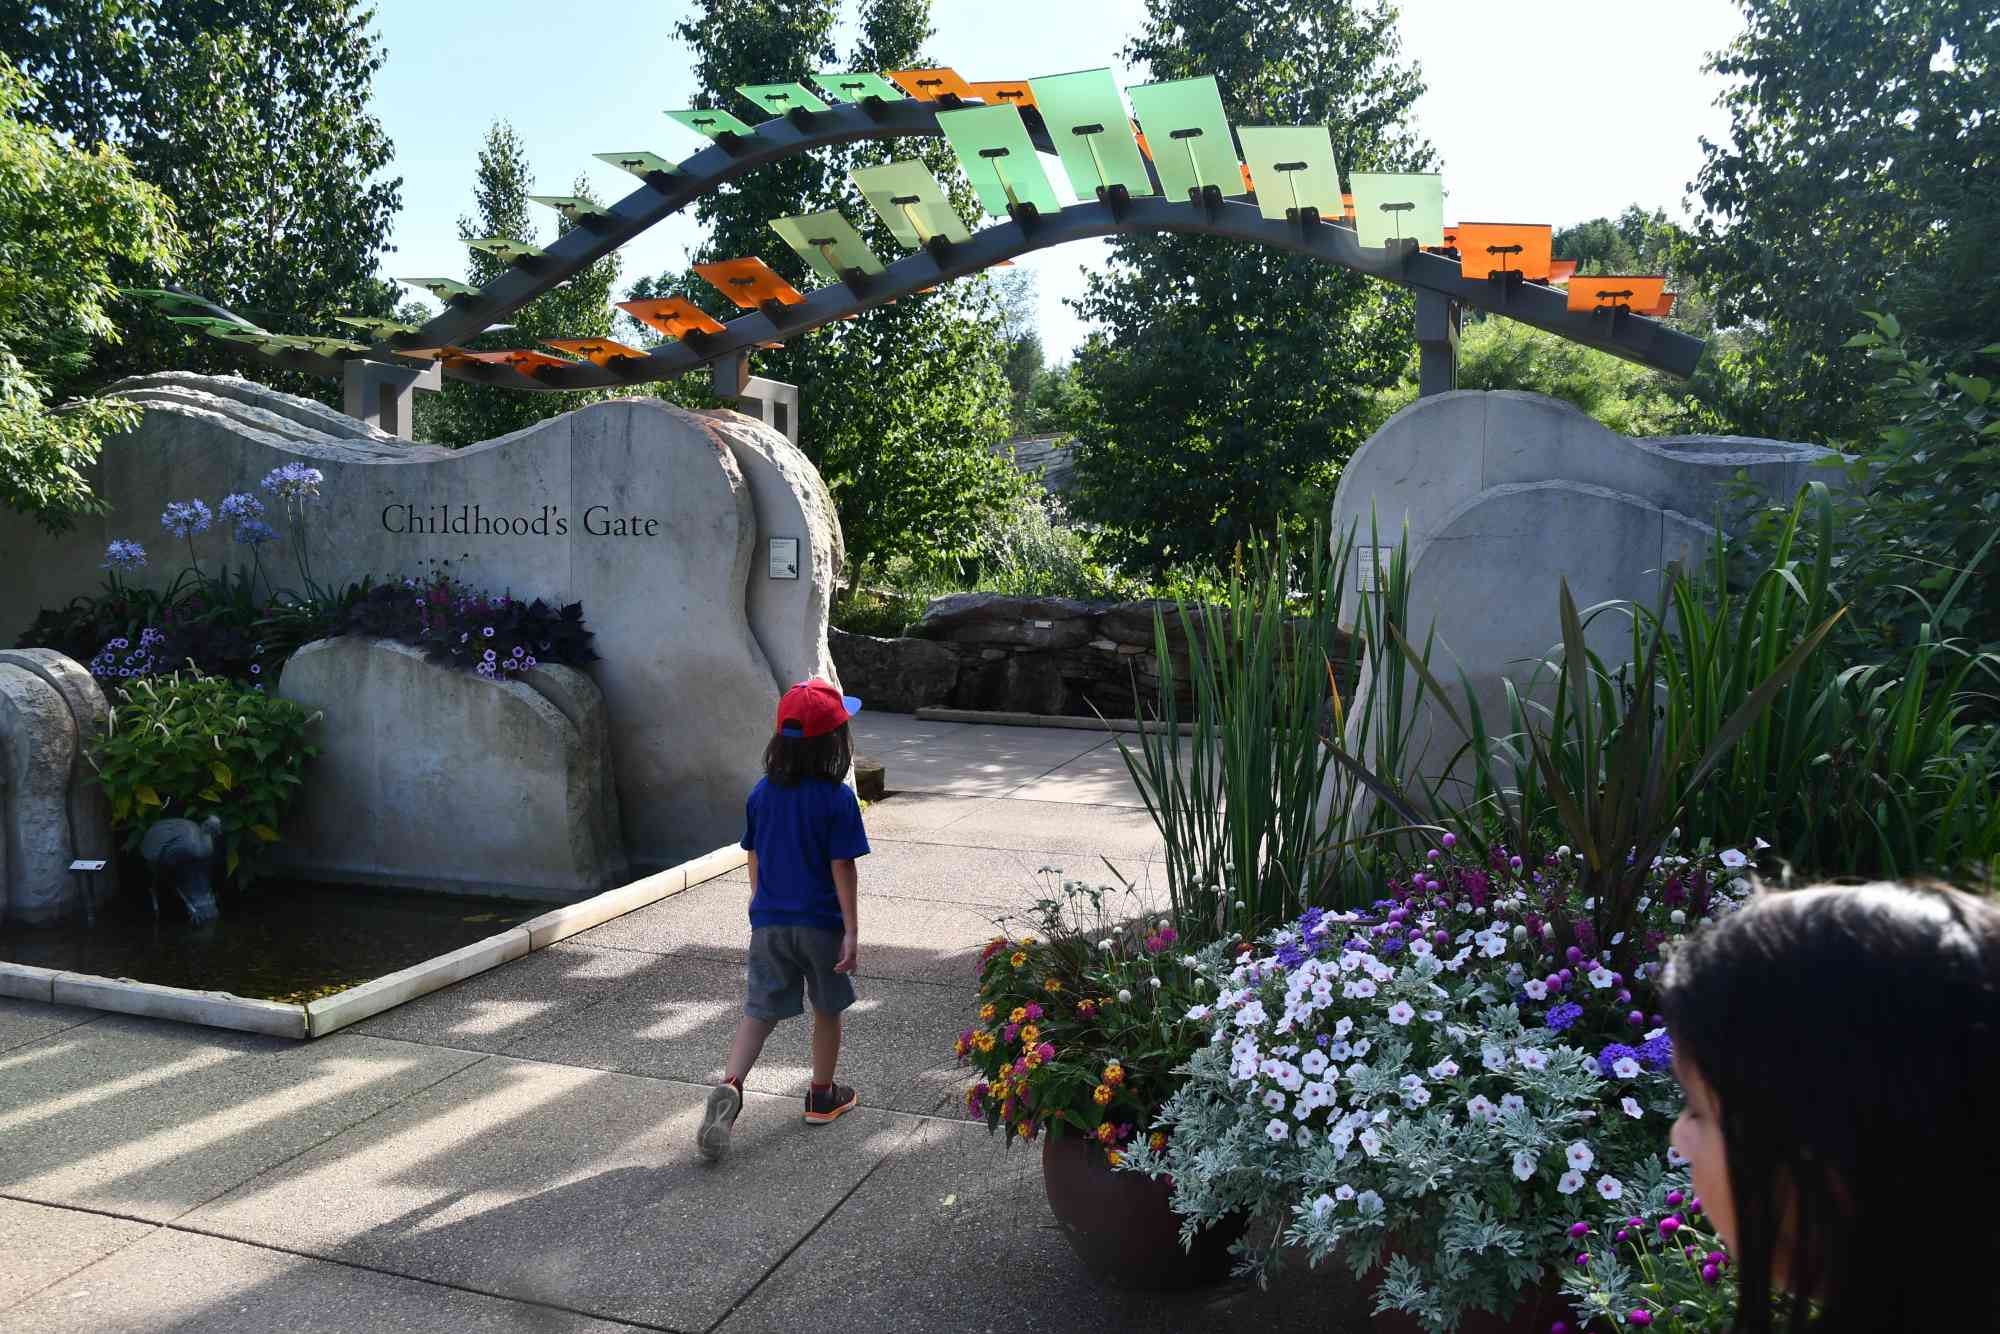 Childhoods Gate at Arboretum